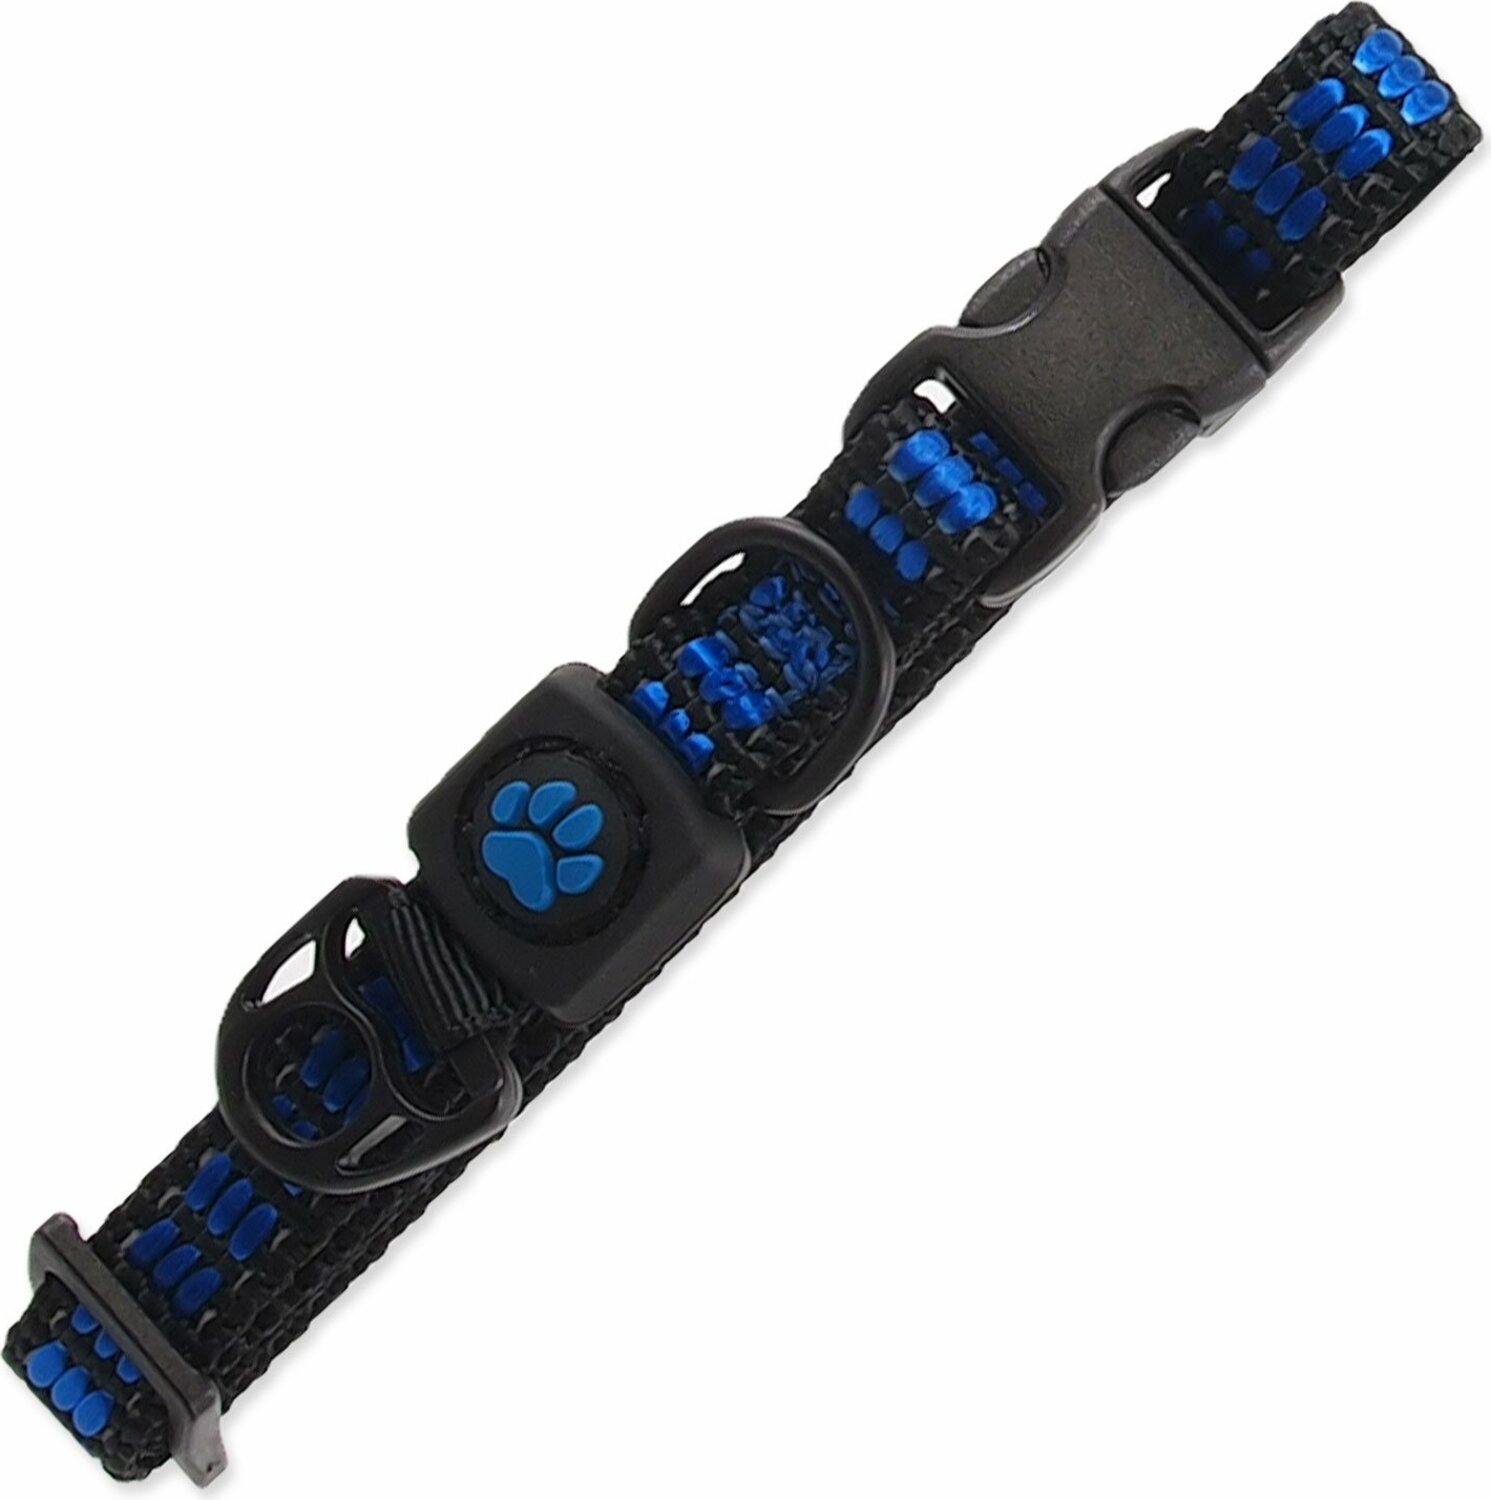 Obojek Active Dog Strong XS modrý 1x21-30cm